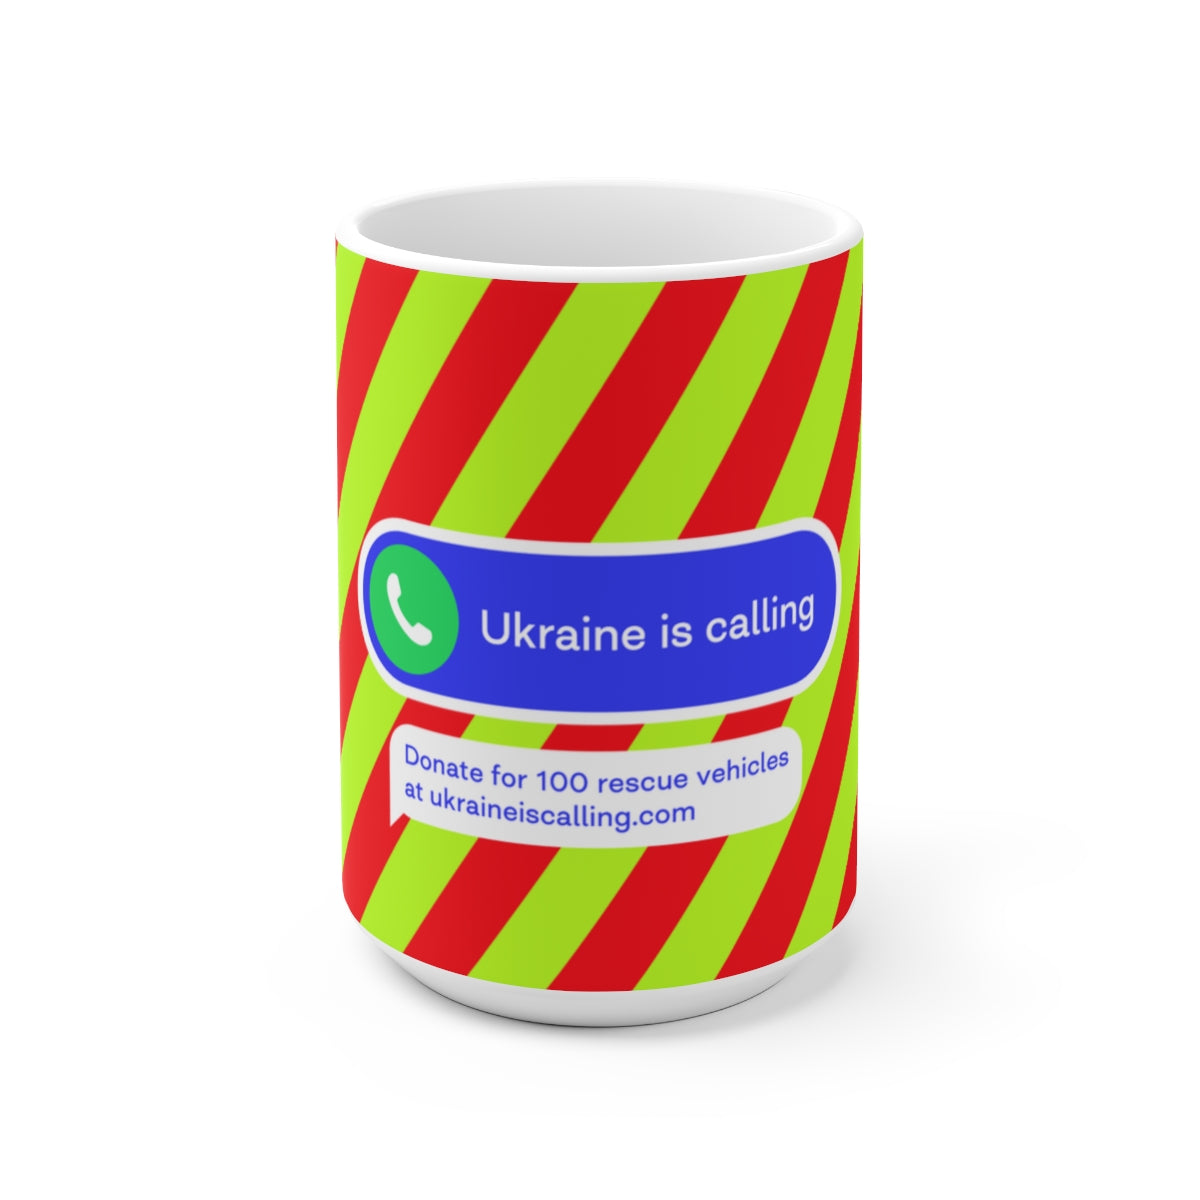 Gespendet an die Ukraine – Keramikbecher